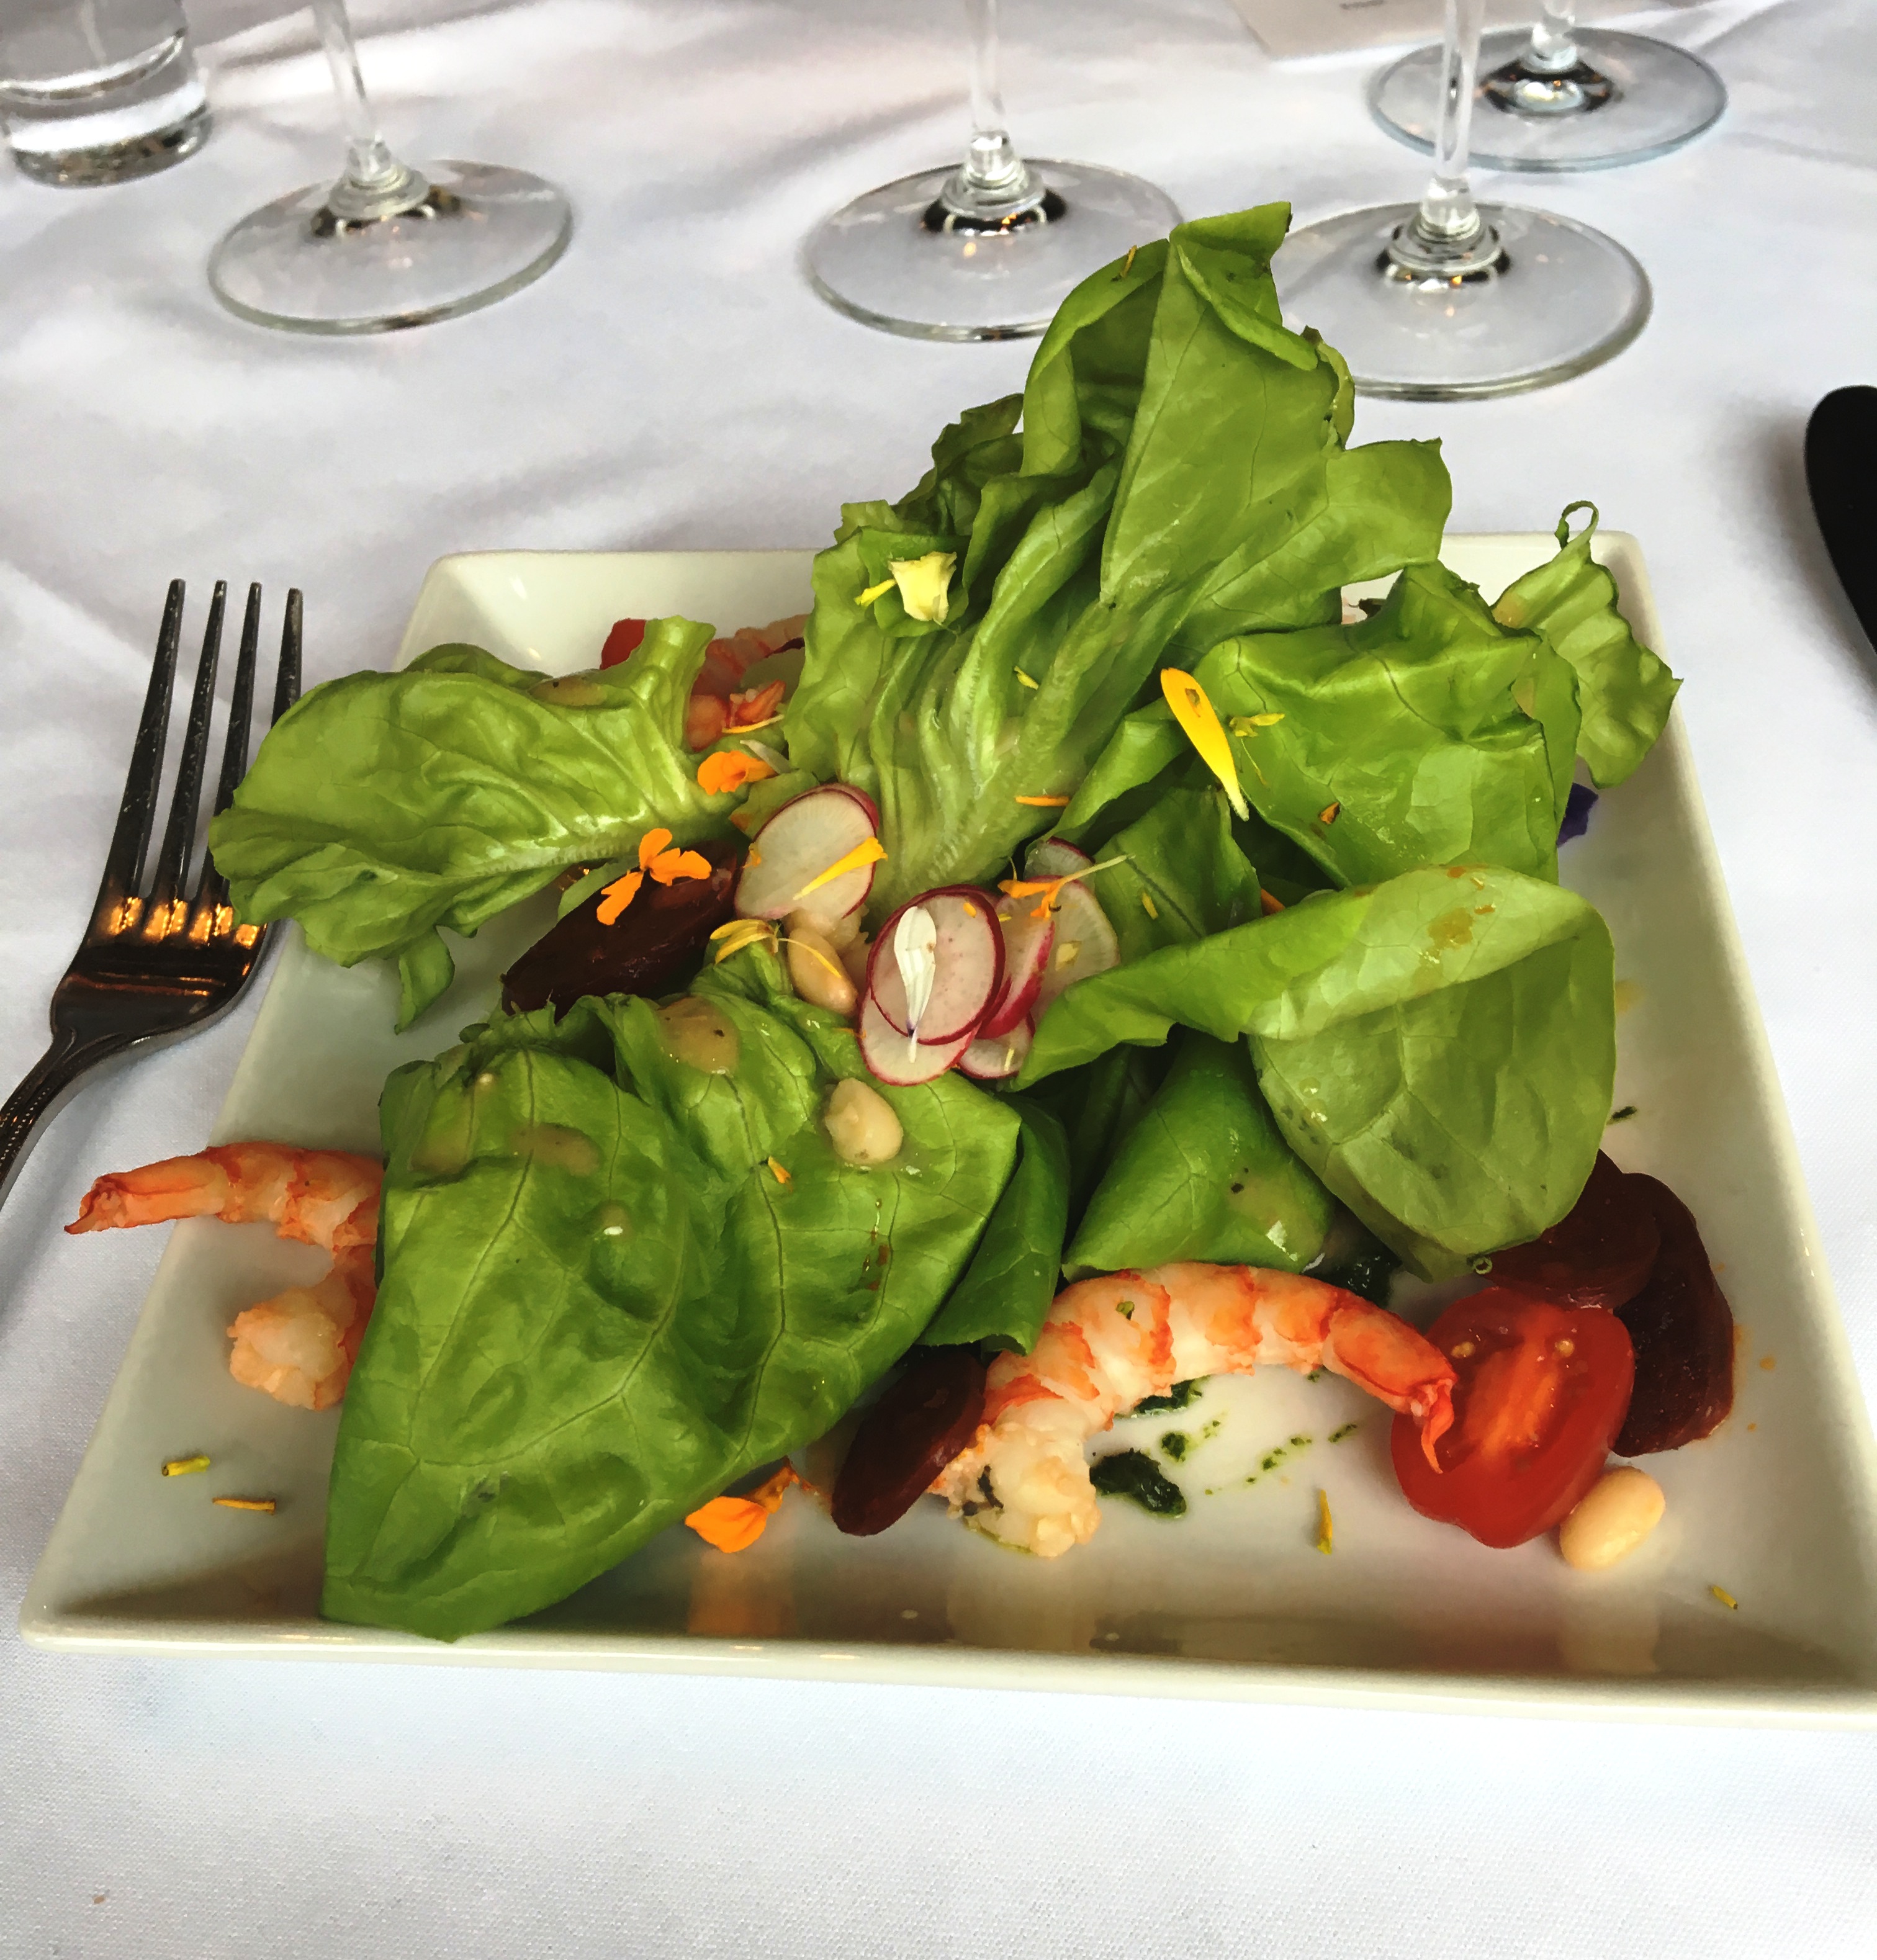 Kathie Lee lunch shrimp salad.JPG